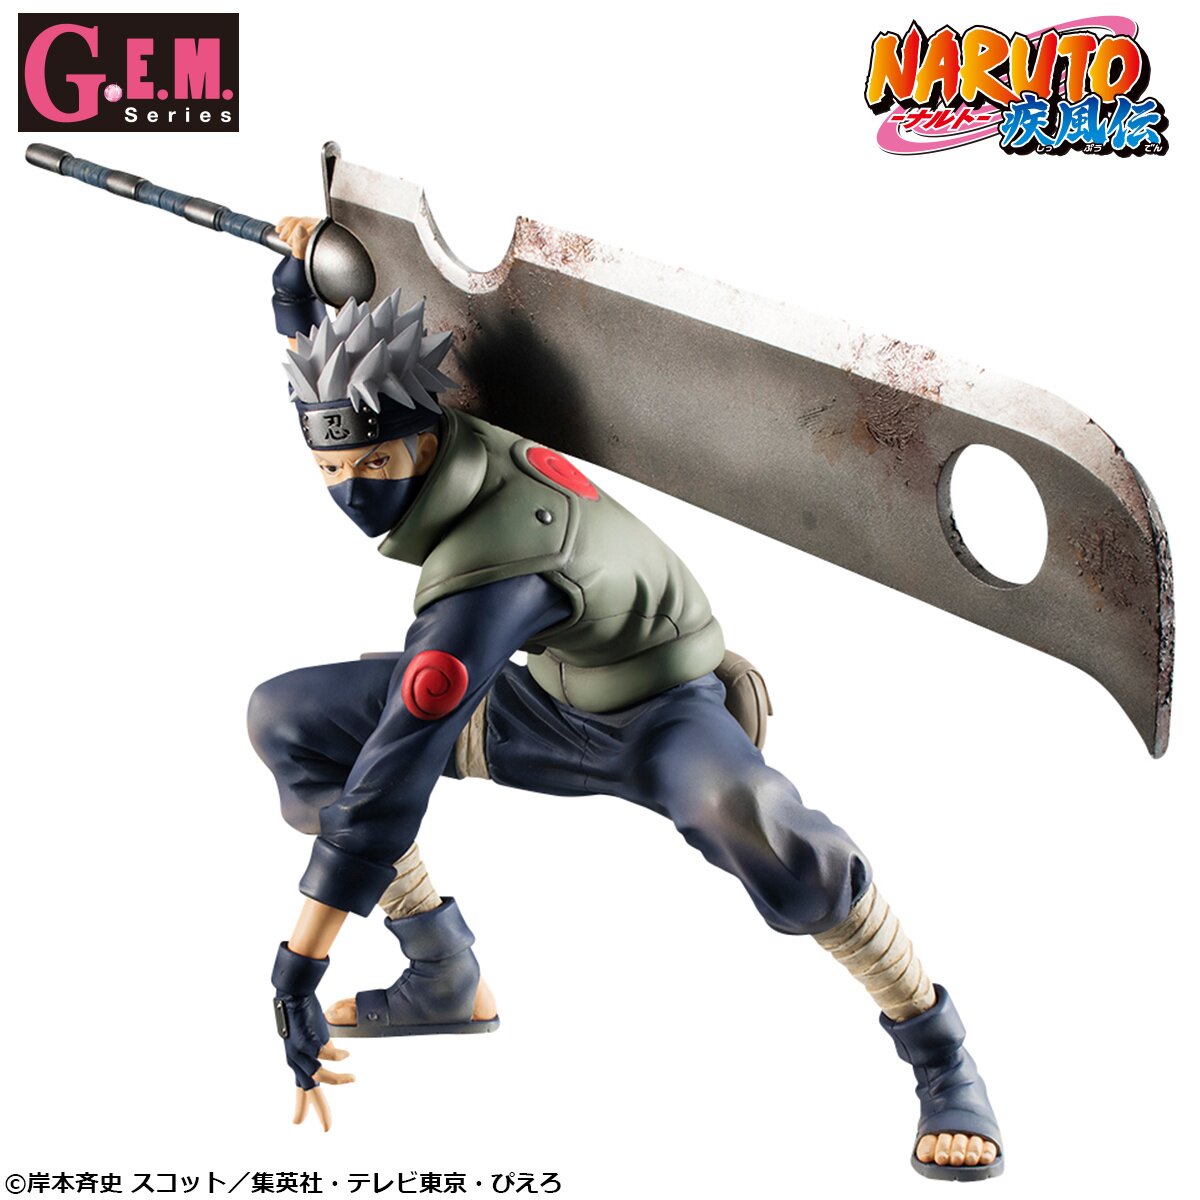 Figurine Megahouse - G.E.M. Series: Naruto Shippuden - Kakashi